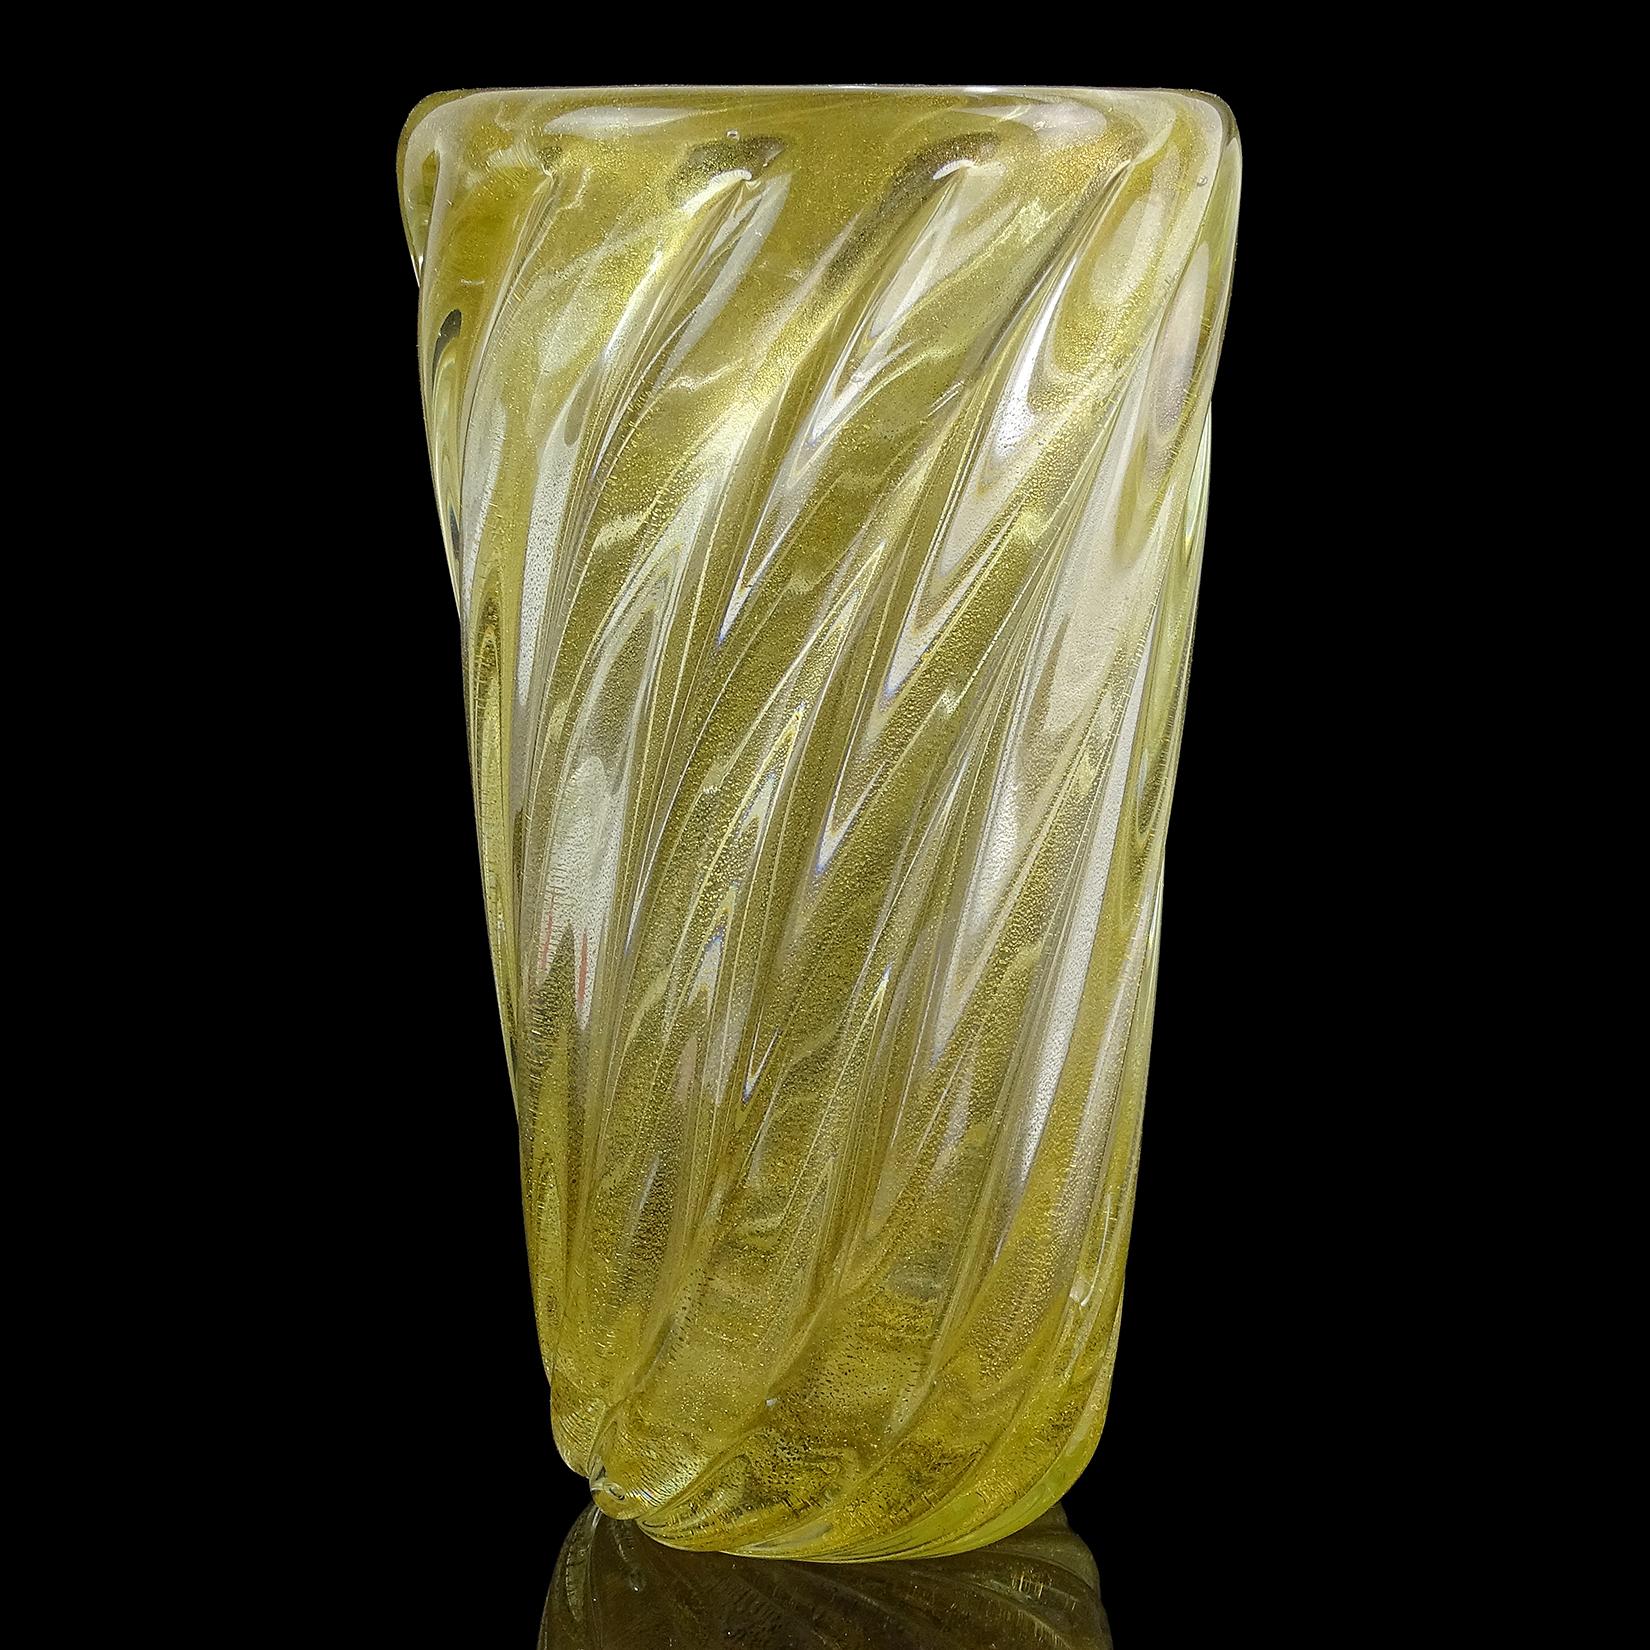 Schöne Vintage Murano mundgeblasen Goldflecken italienische Kunst Glas Blumenvase. Das Stück ist reichlich mit Blattgold überzogen und hat ein geripptes Muster. Hergestellt aus sehr dickem Glas. Es wurde in Anlehnung an das Unternehmen Seguso Vetri